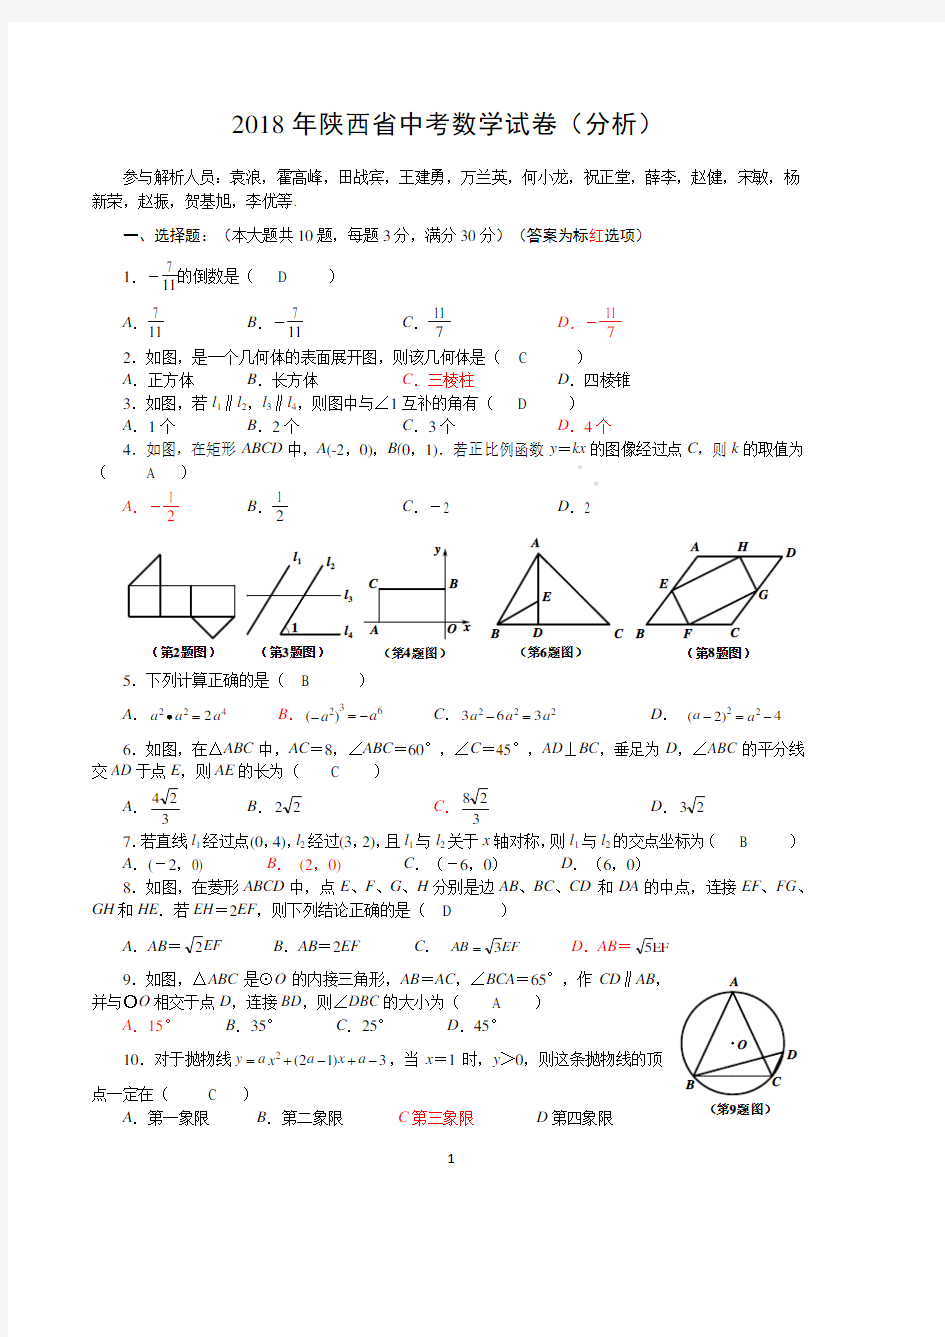 陕西省2018年中考数学真题试题(pdf,含答案)